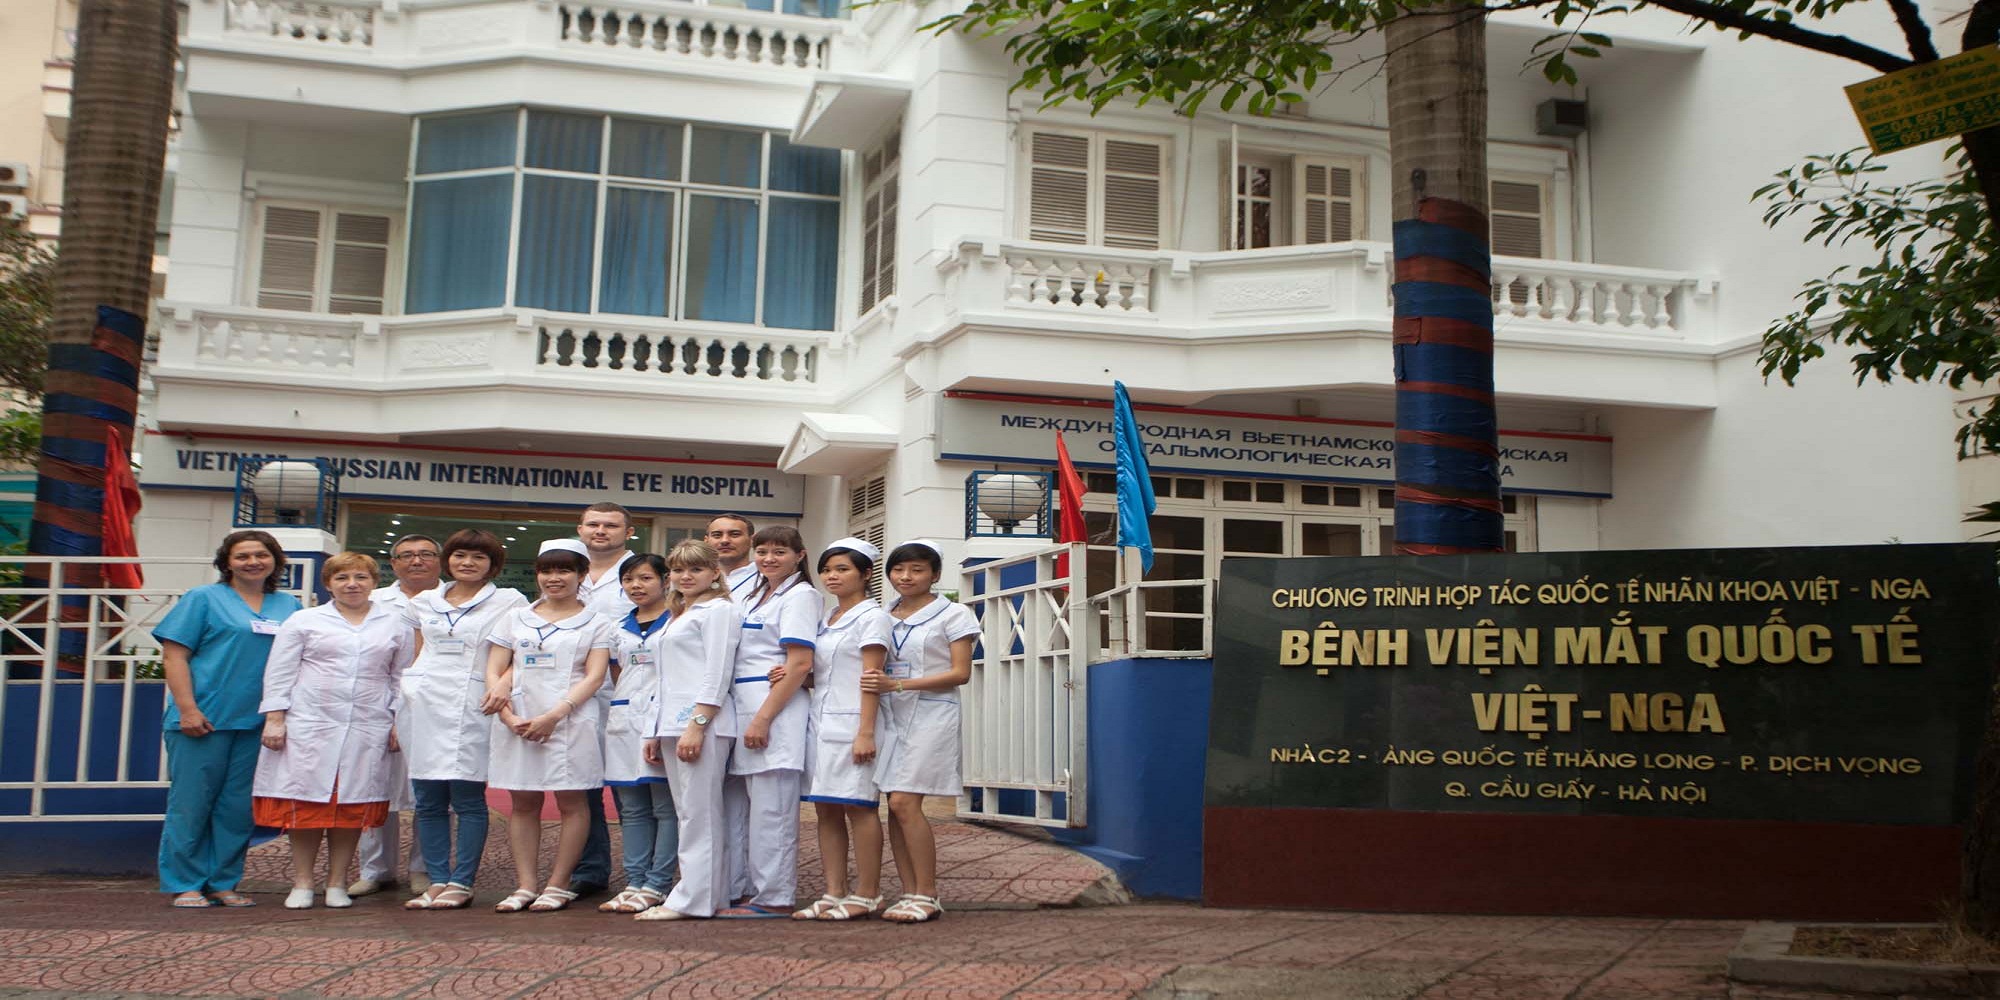 Bệnh viện mắt Quốc tế Việt - Nga 